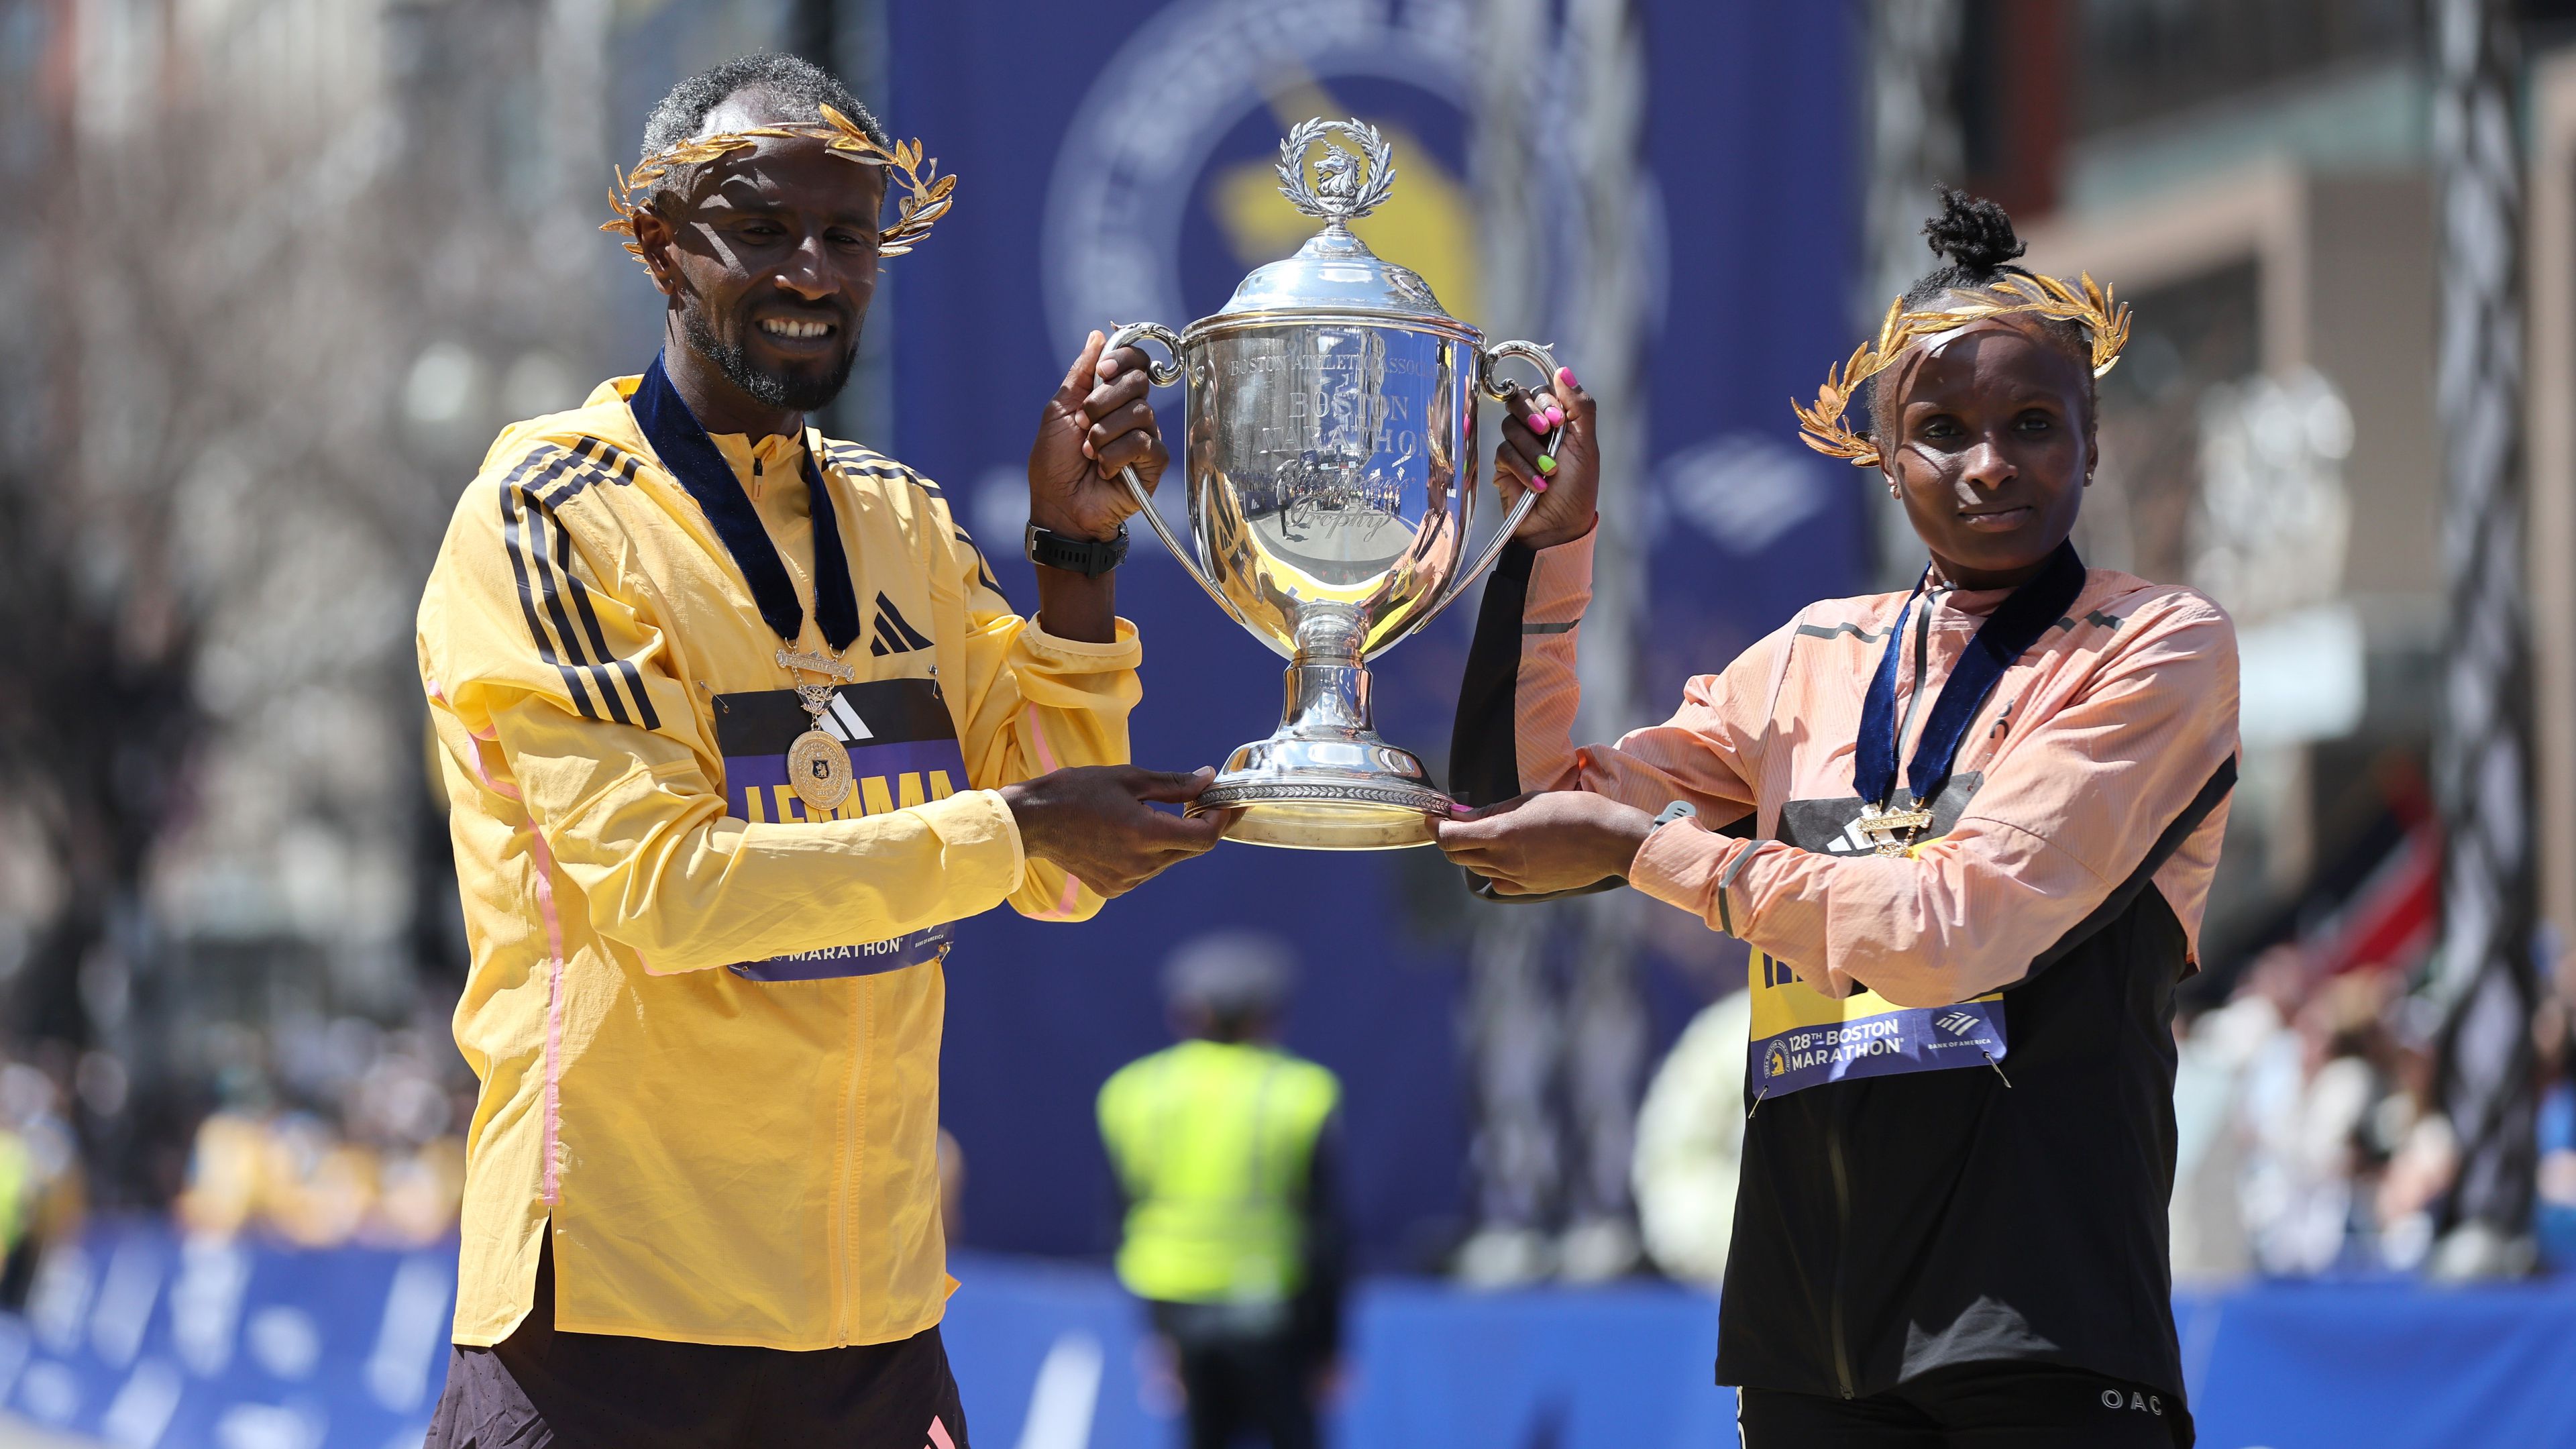 Etióp és kenyai siker a bostoni maratonin